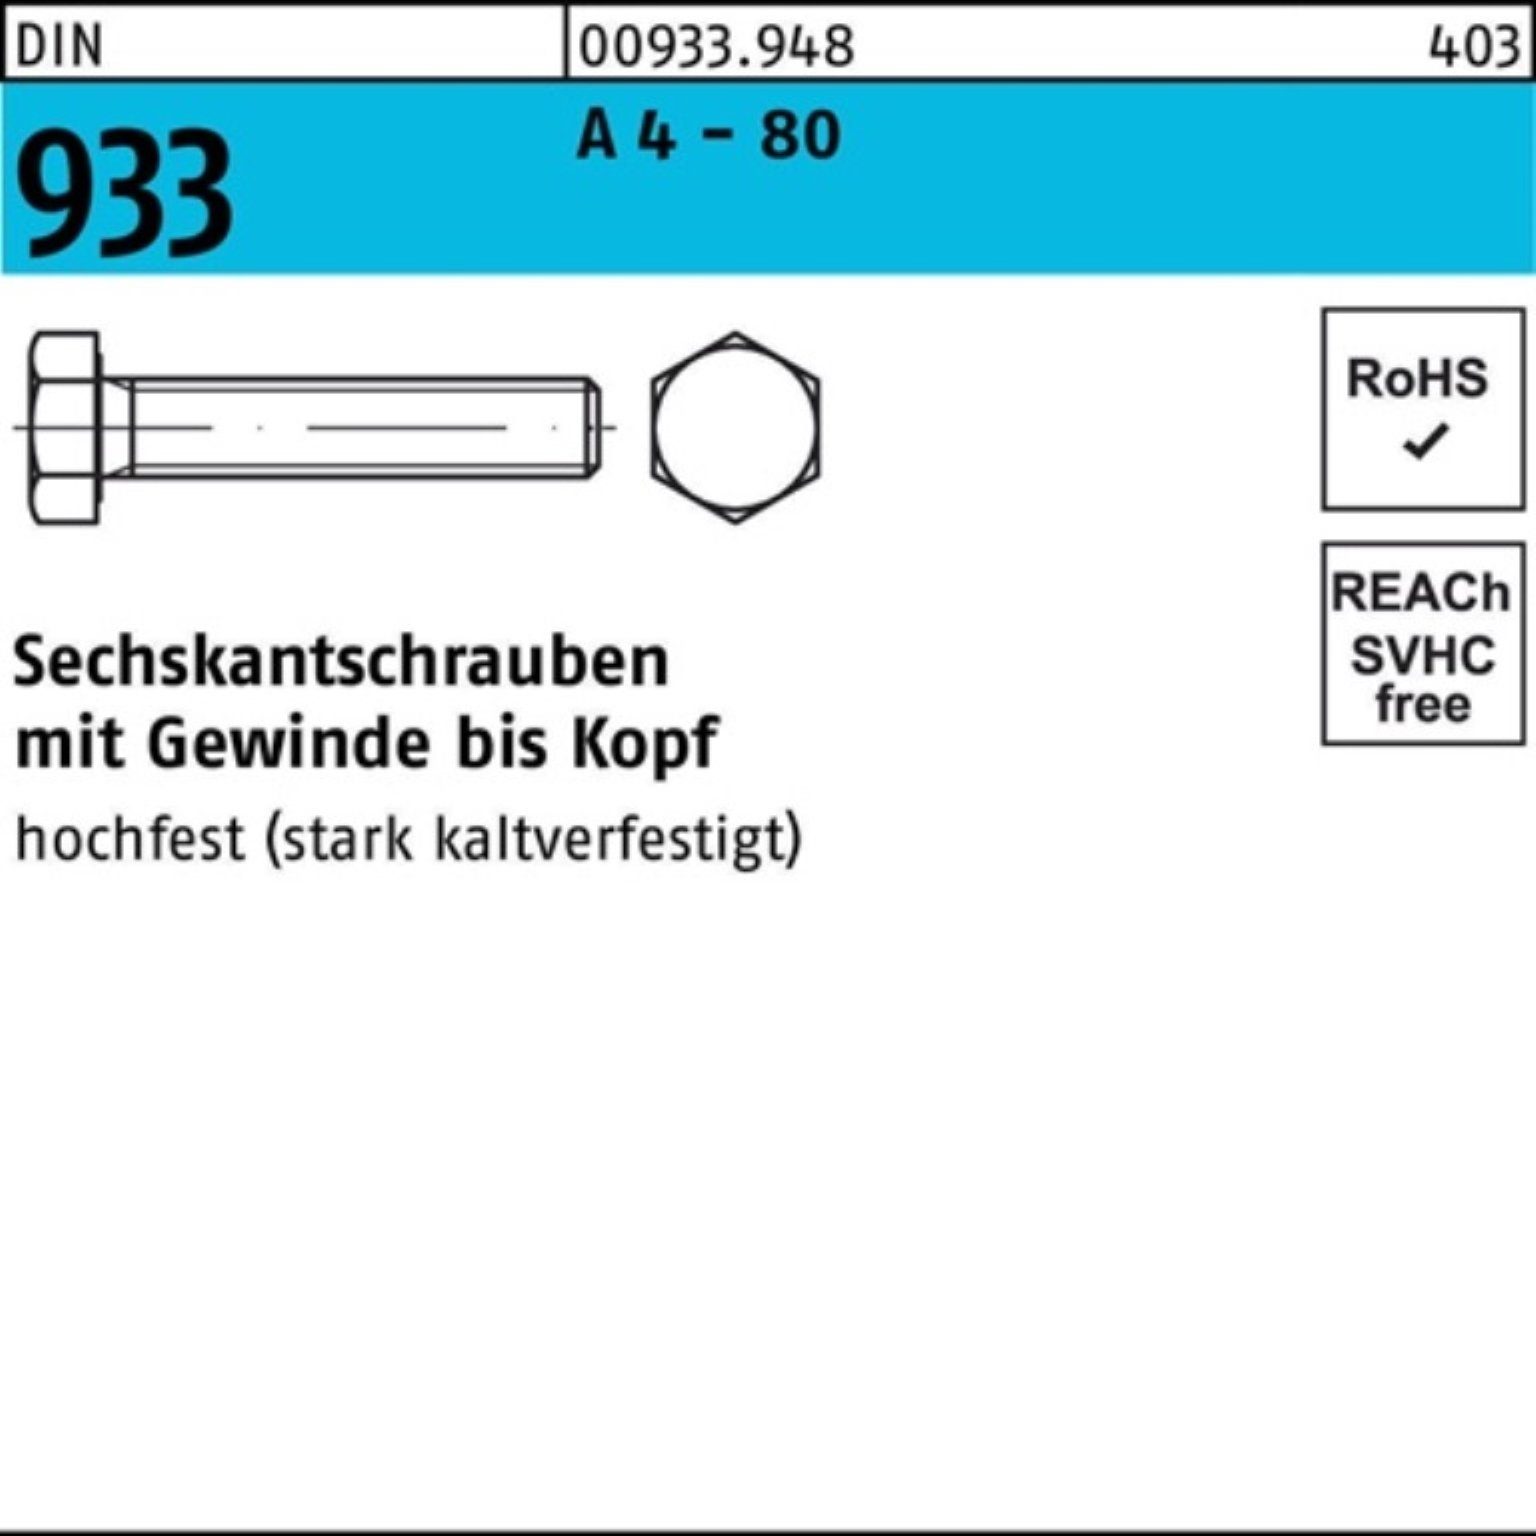 A DIN 200er 50 M5x 200 - Reyher Sechskantschraube 80 VG Sechskantschraube 933 Stück 4 Pack DIN